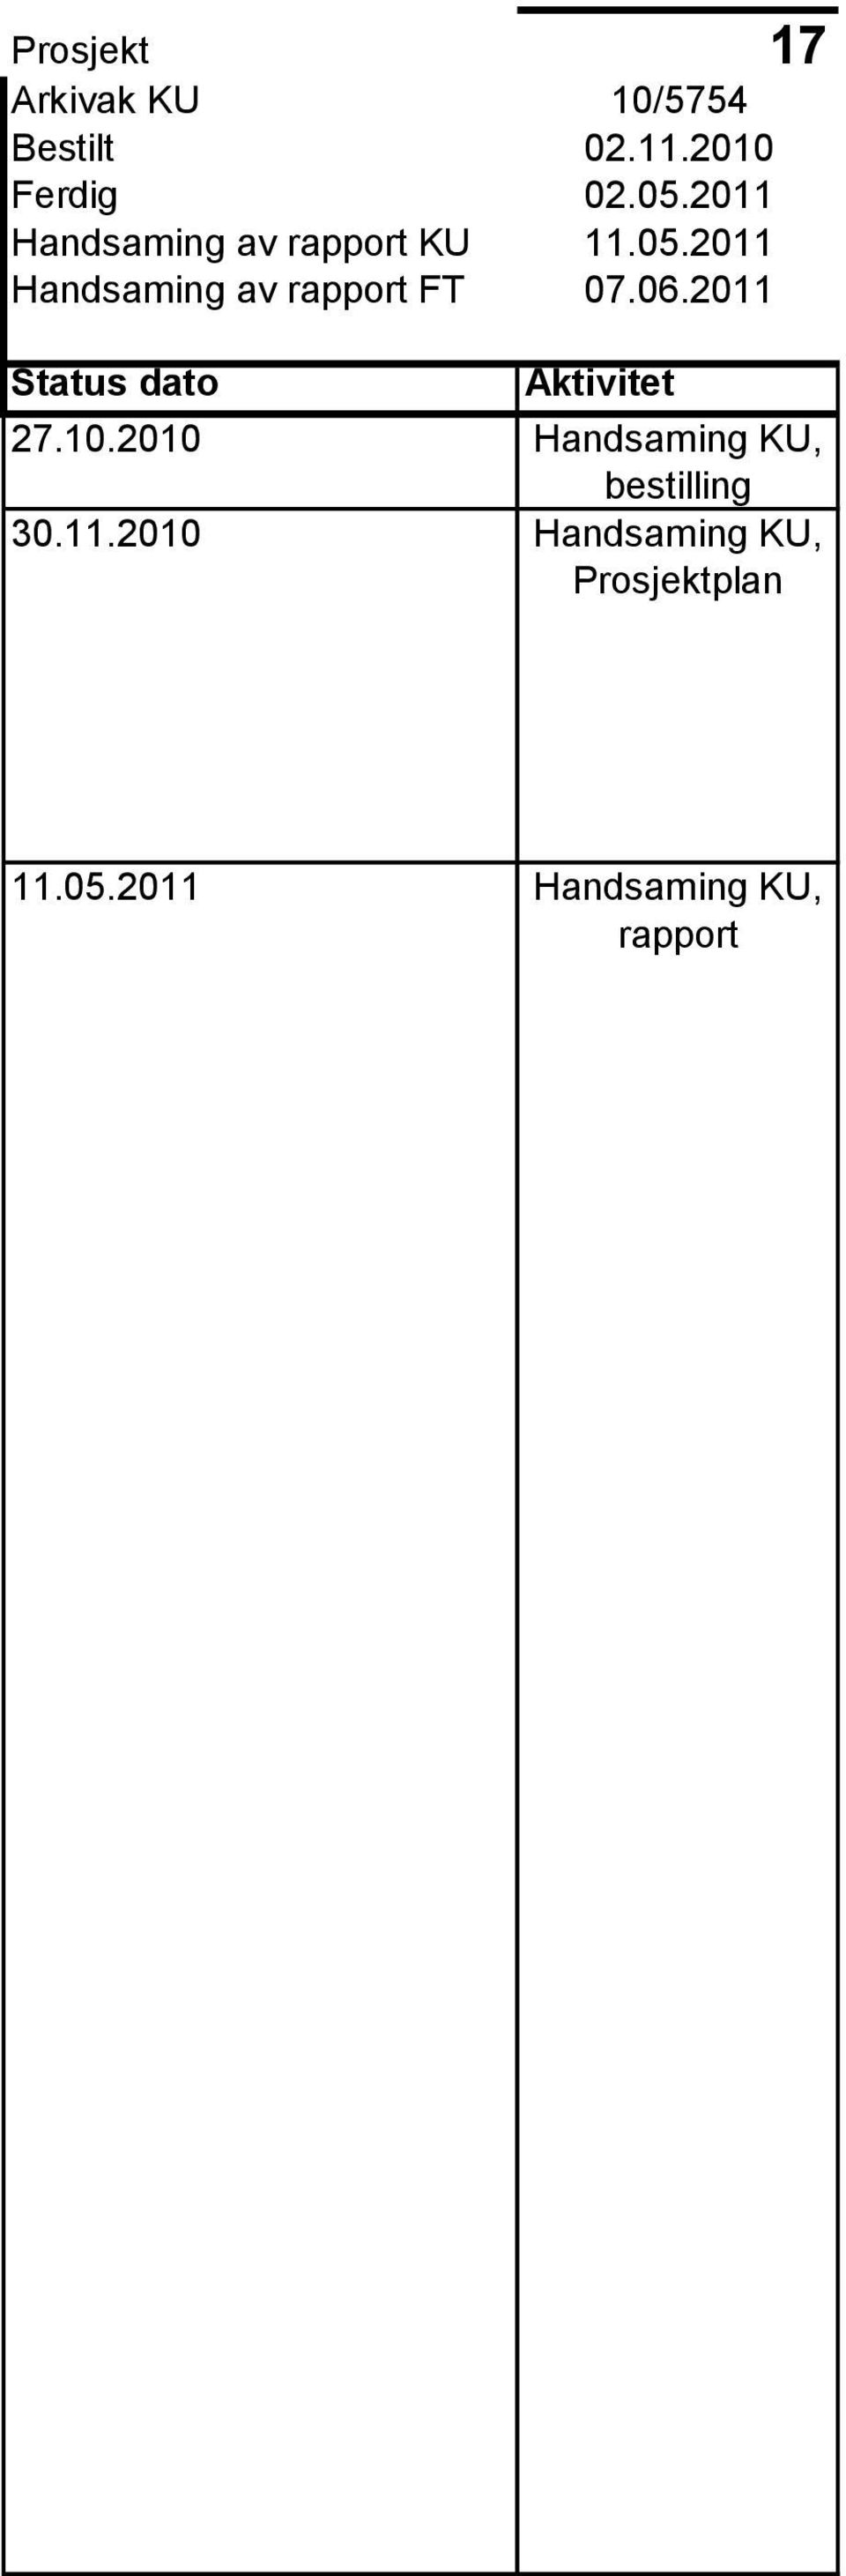 2011 Handsaming av rapport FT 07.06.2011 Status dato Aktivitet 27.